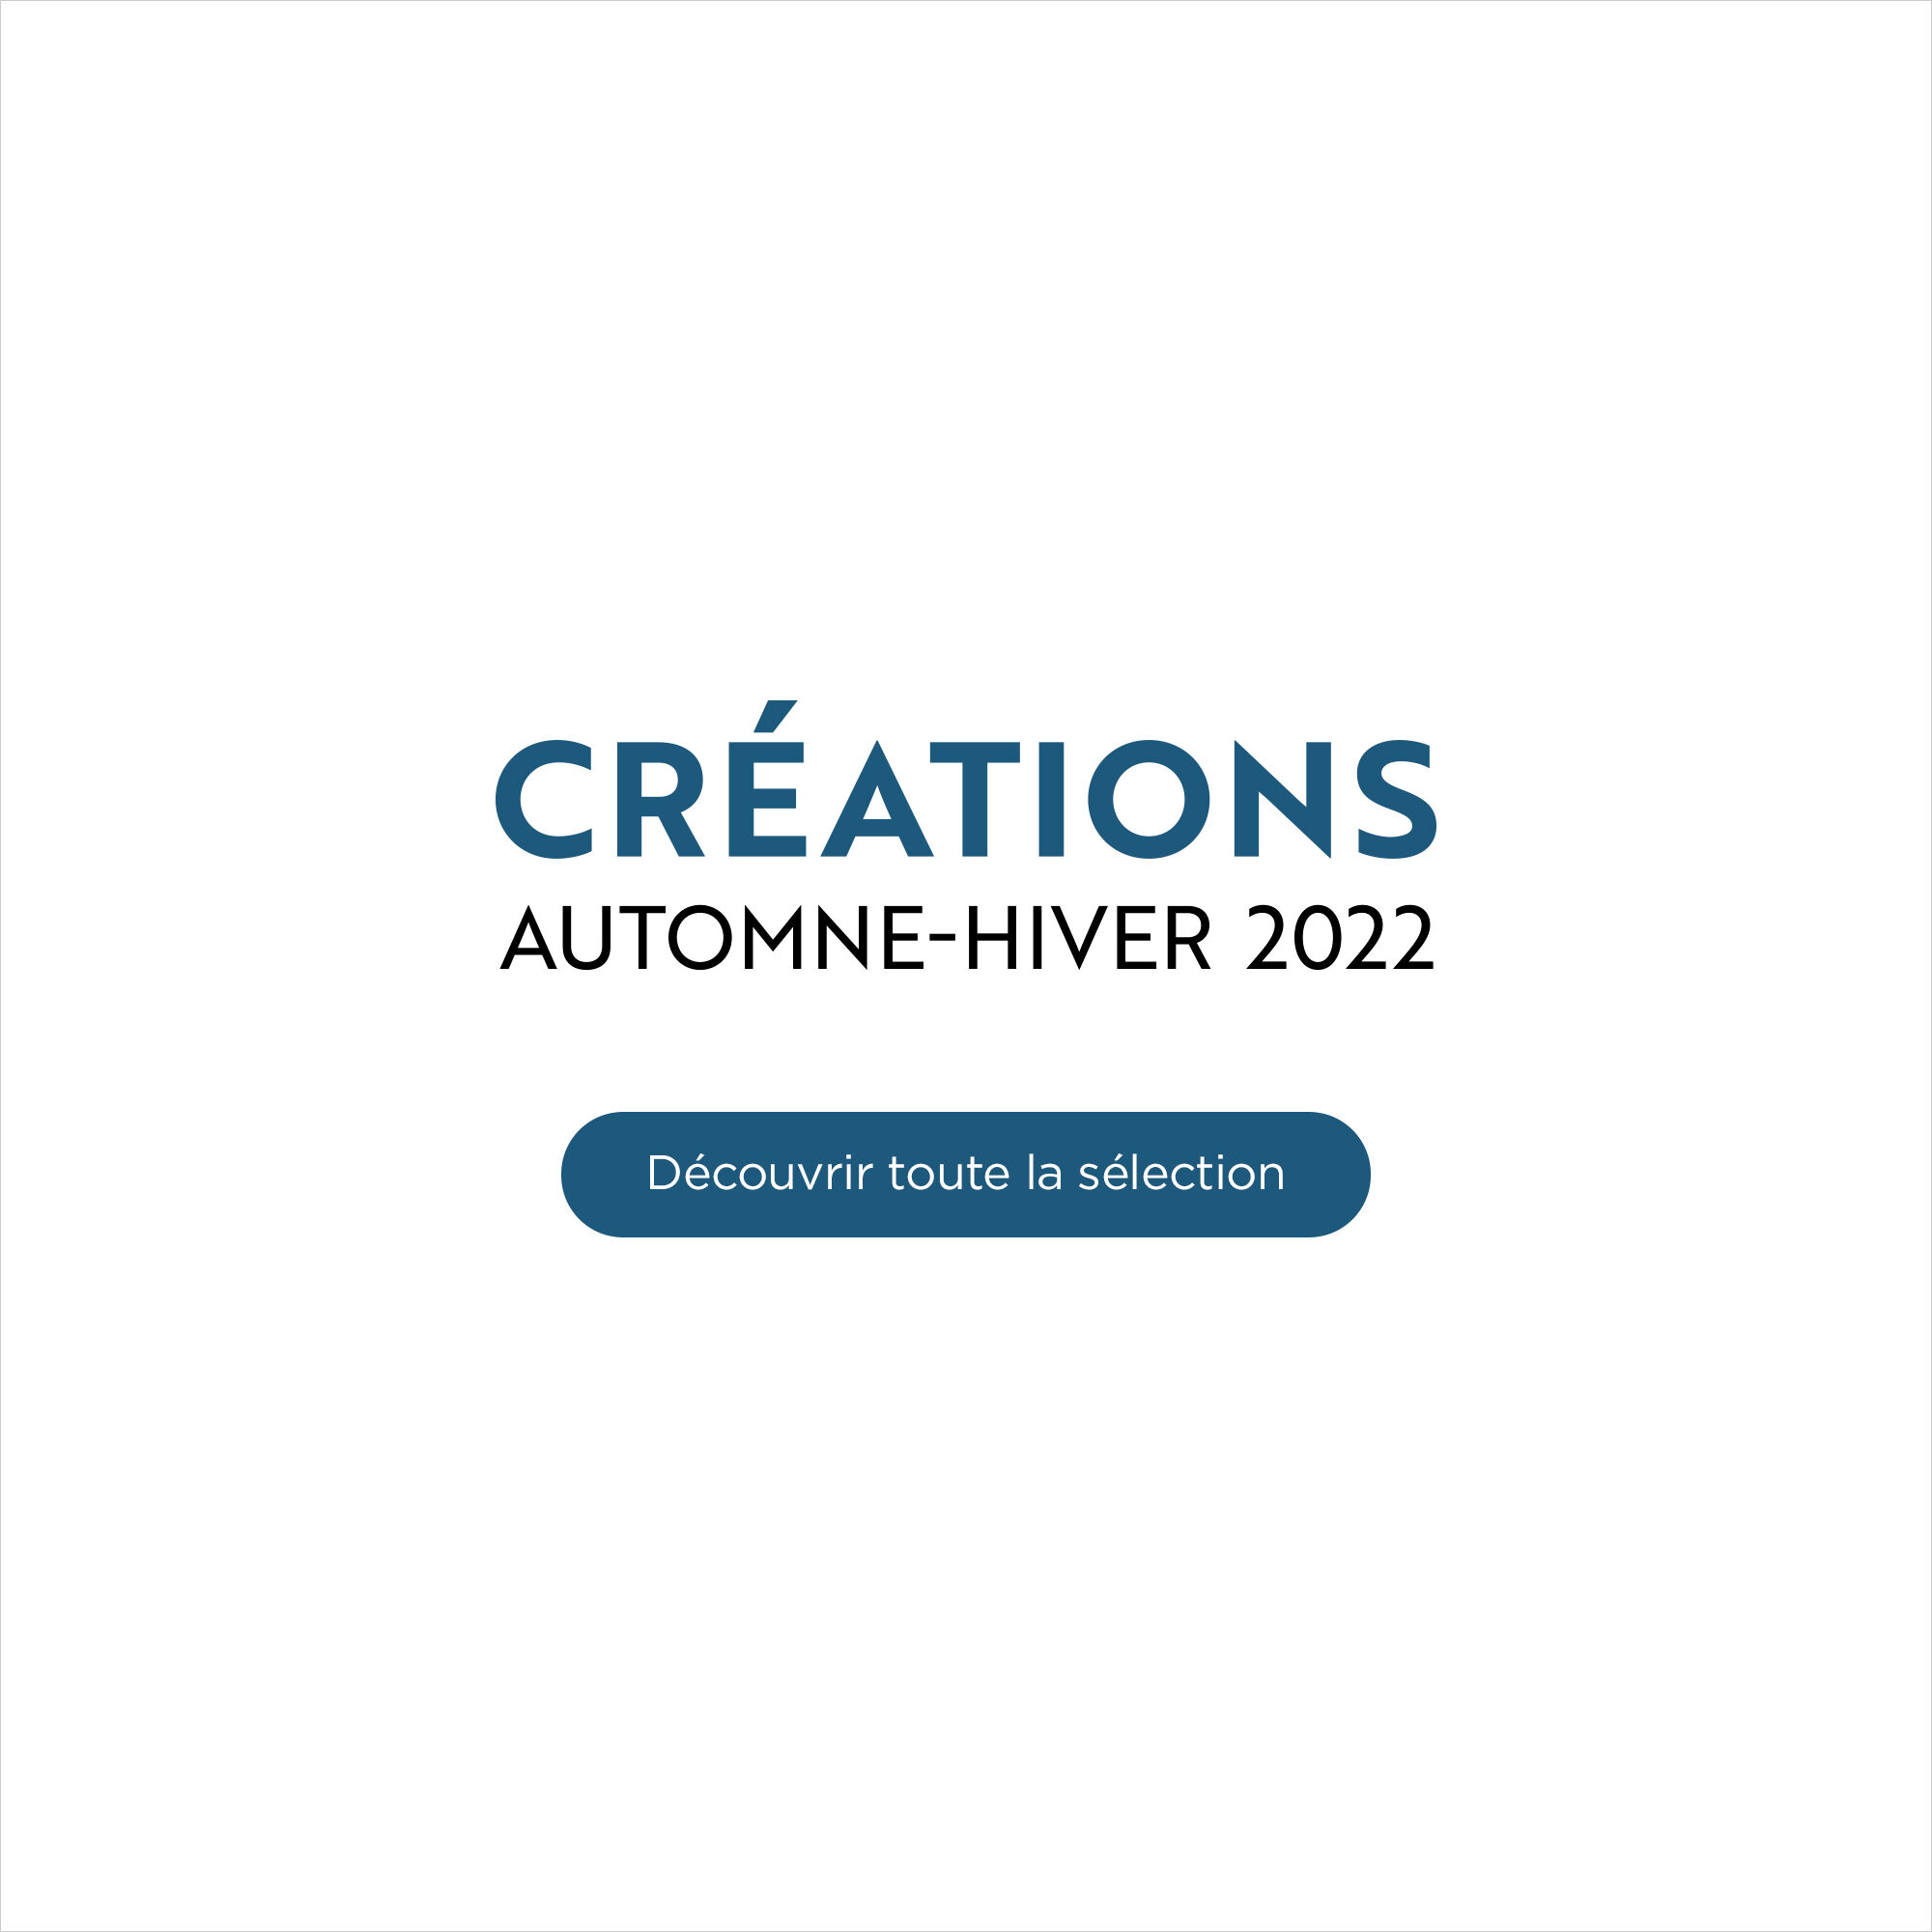 Créations Automne-Hiver 2022